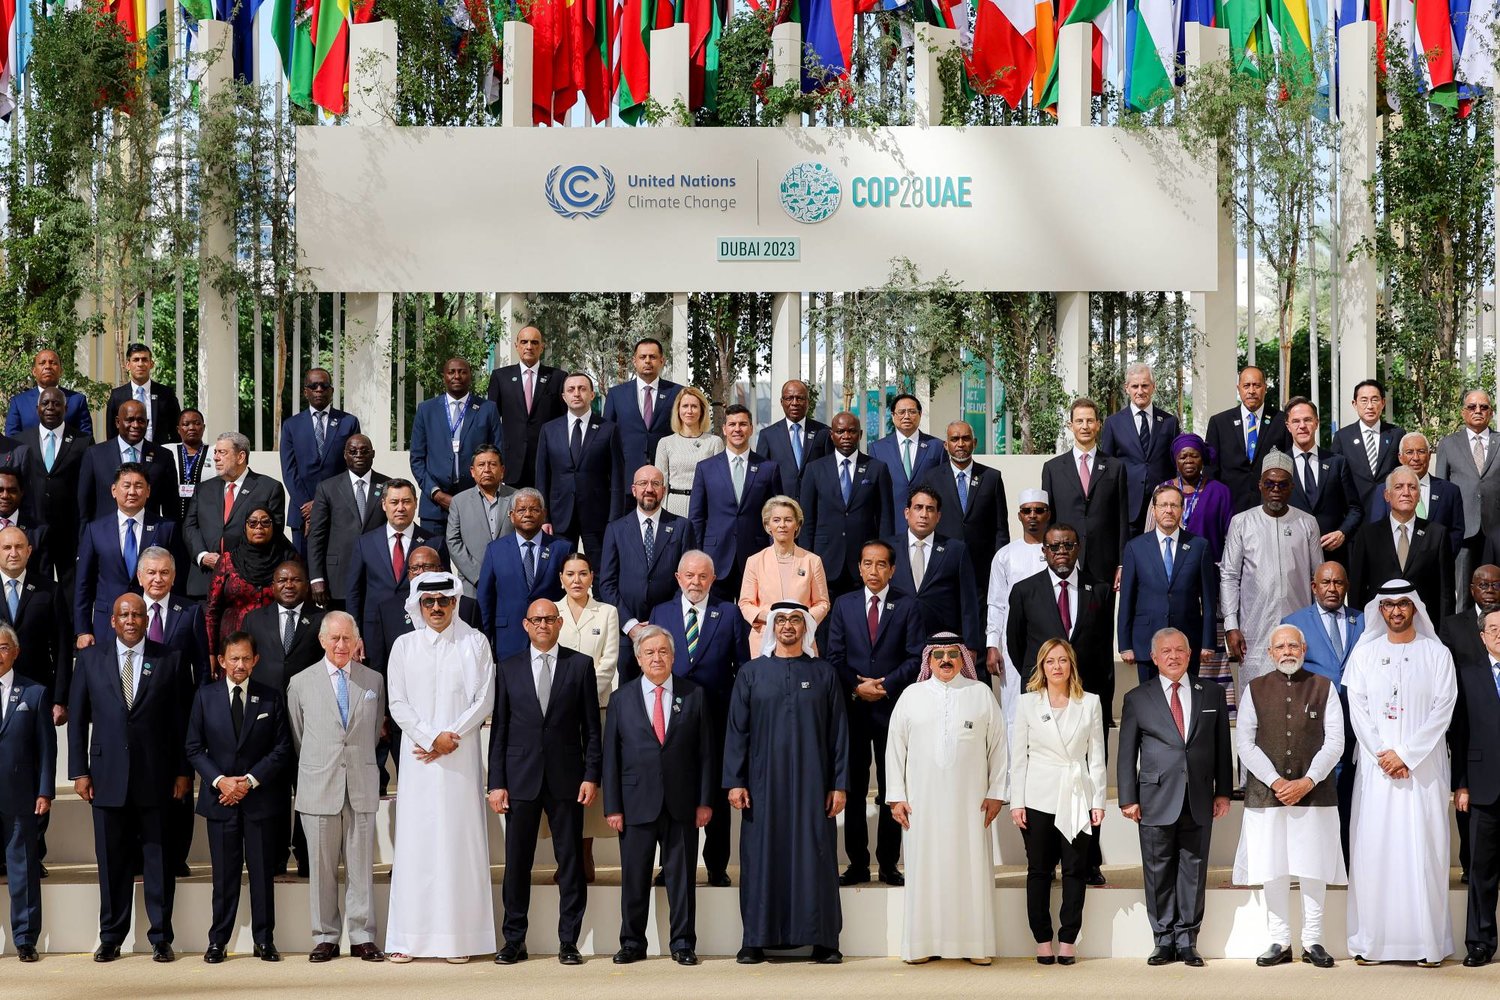 الرئيس الإماراتي محمد بن زايد متوسطاً زعماء الدول في صورة تذكارية خلال اليوم الثاني لمؤتمر «كوب 28» بدبي (د.ب.أ)